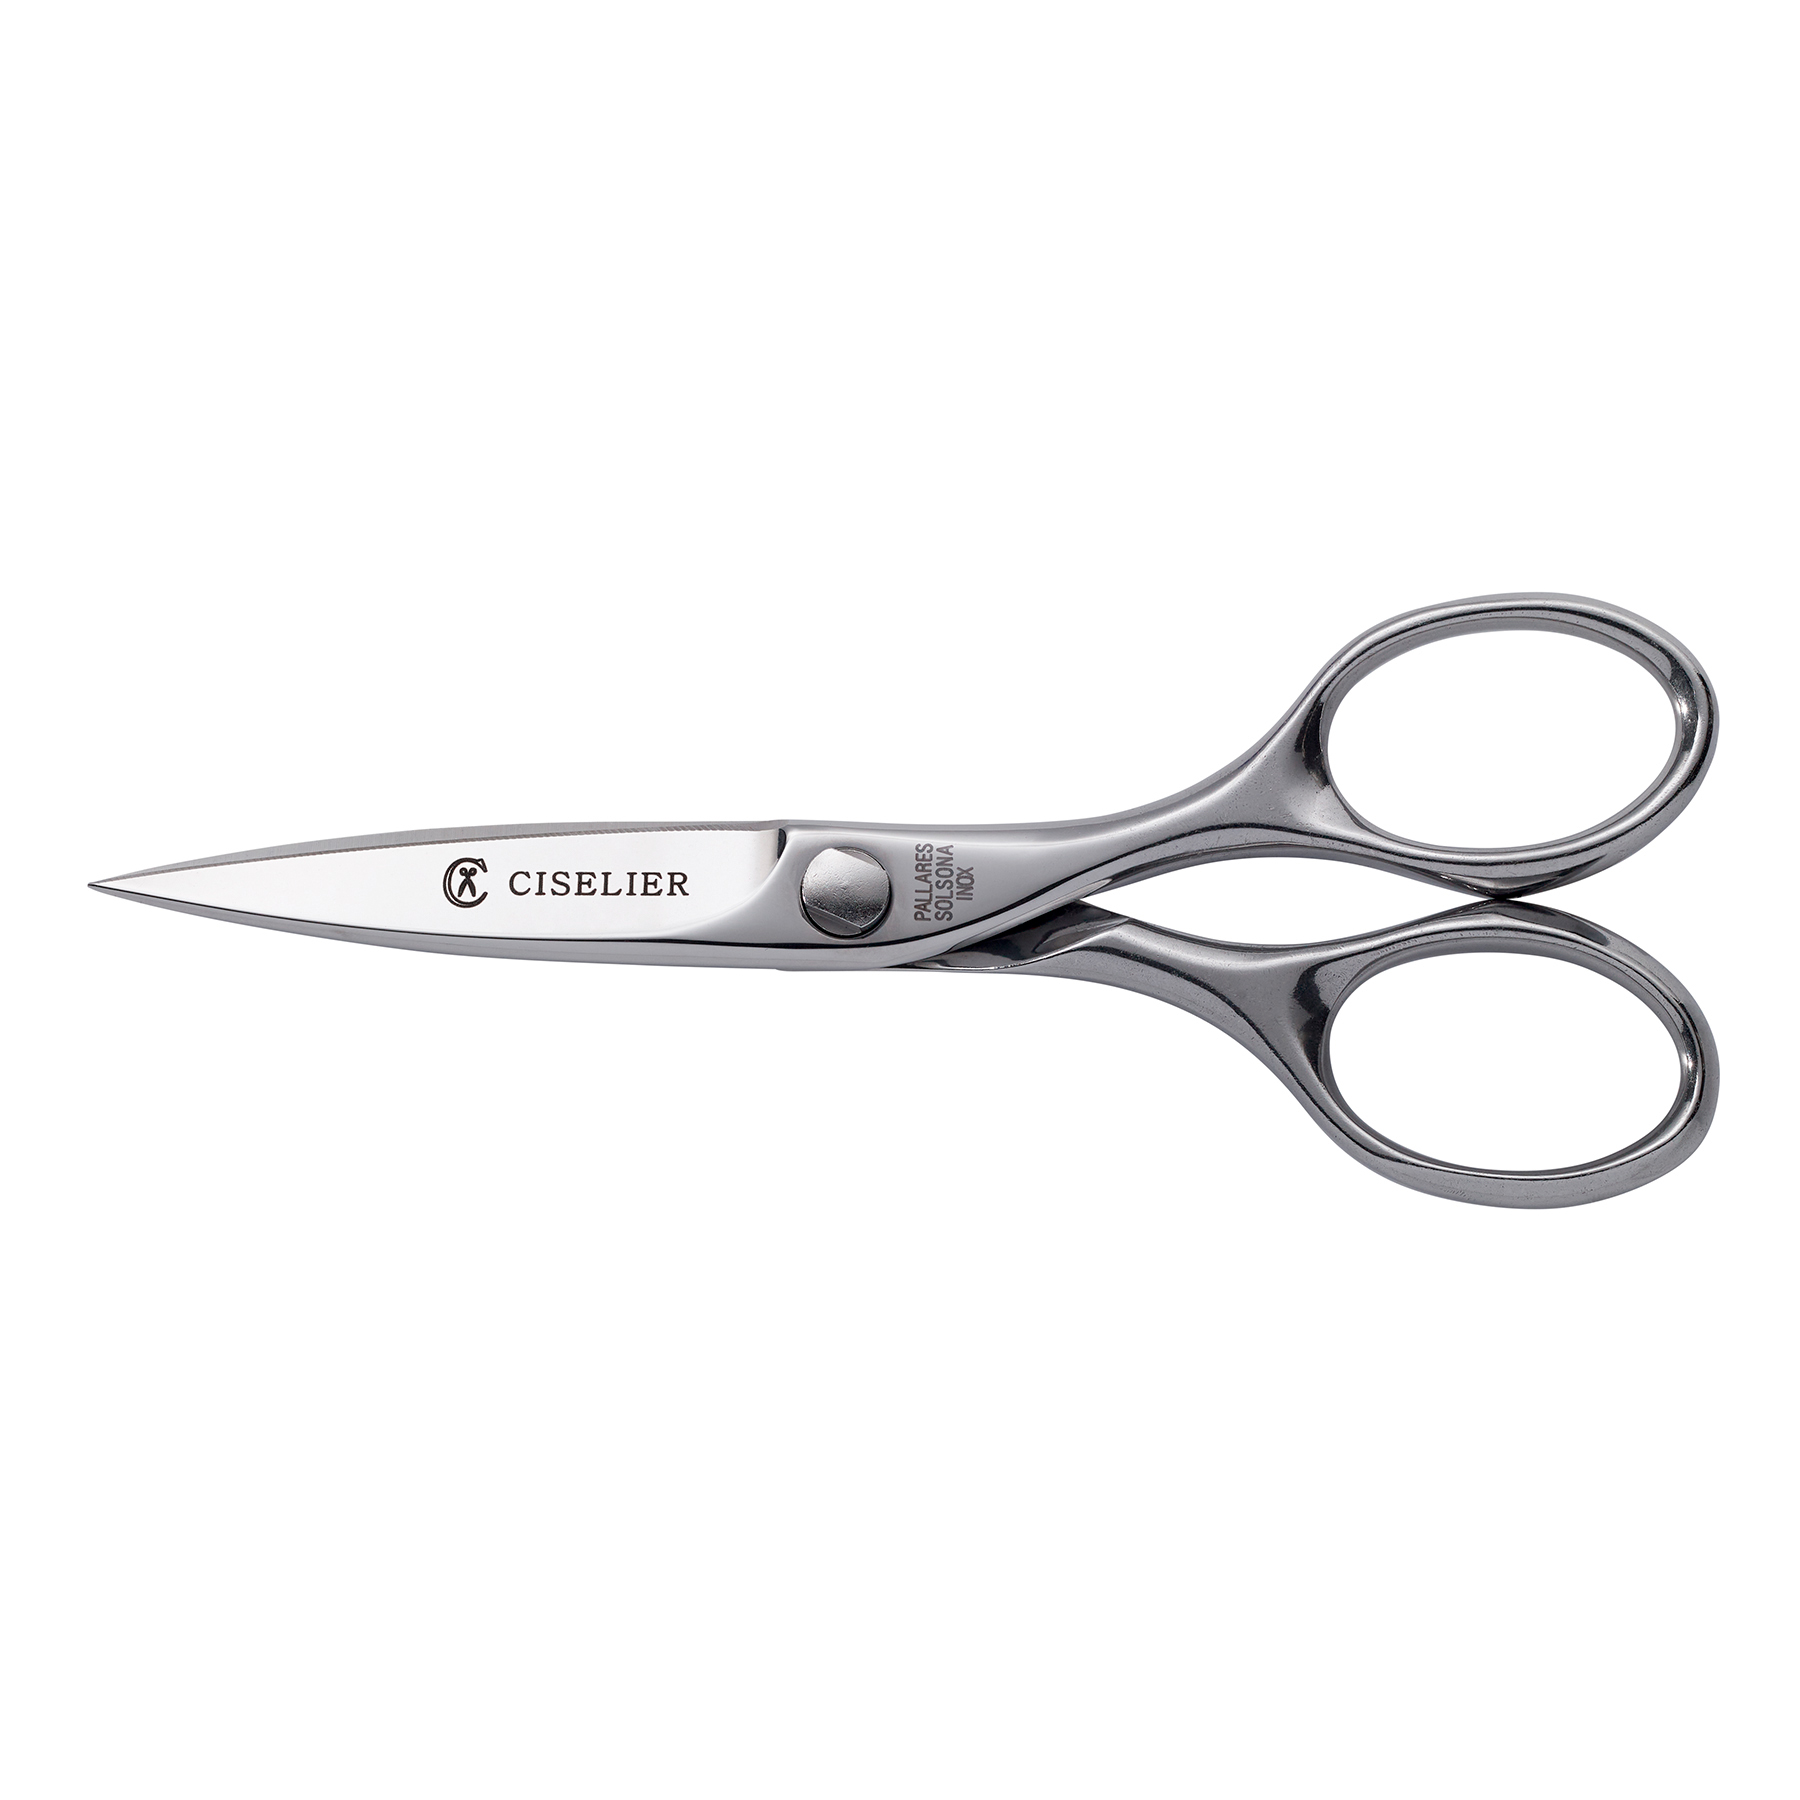 Standard_household_scissors.jpg